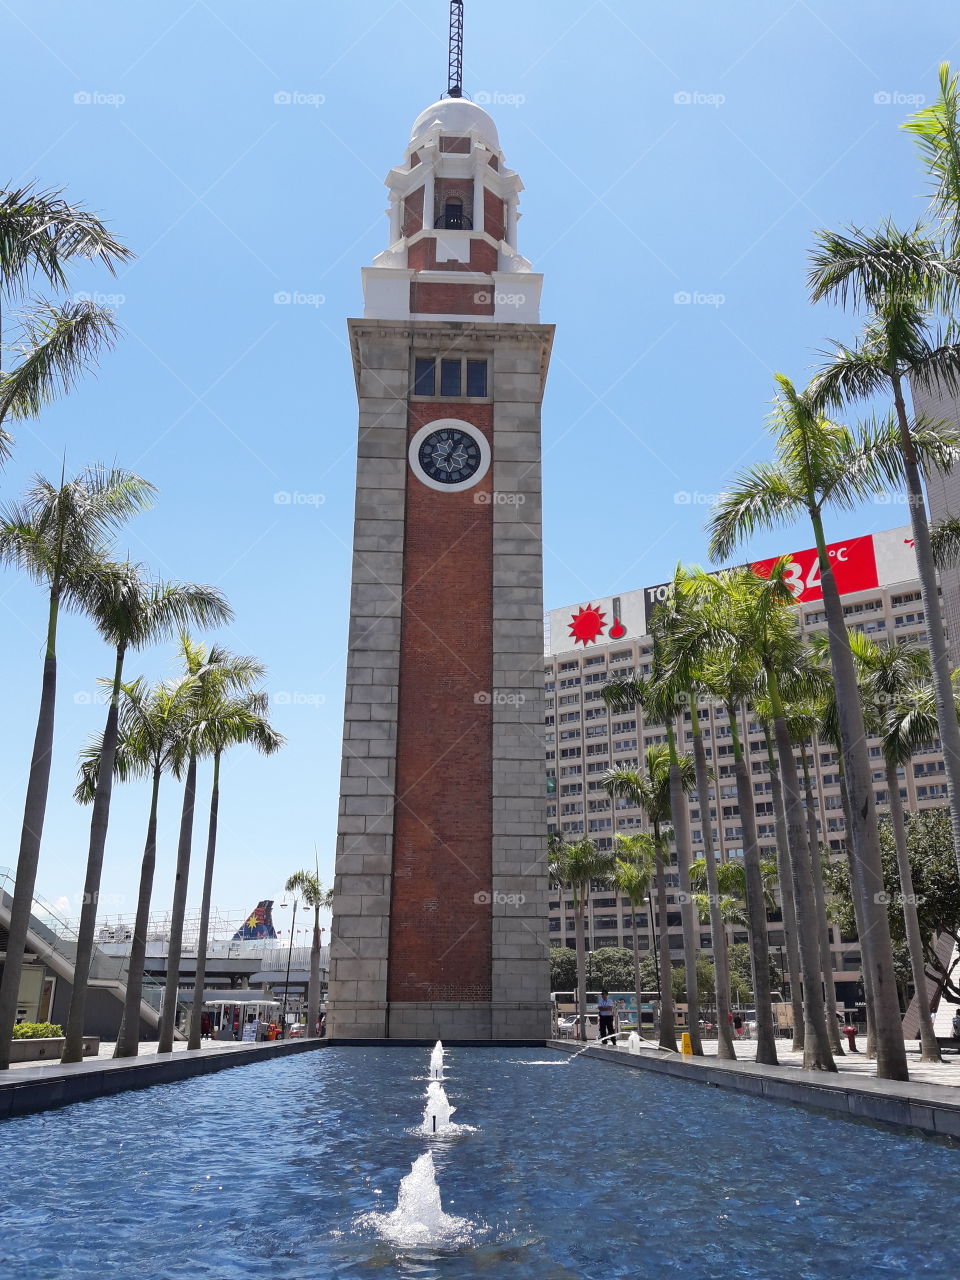 hong kong clock tower